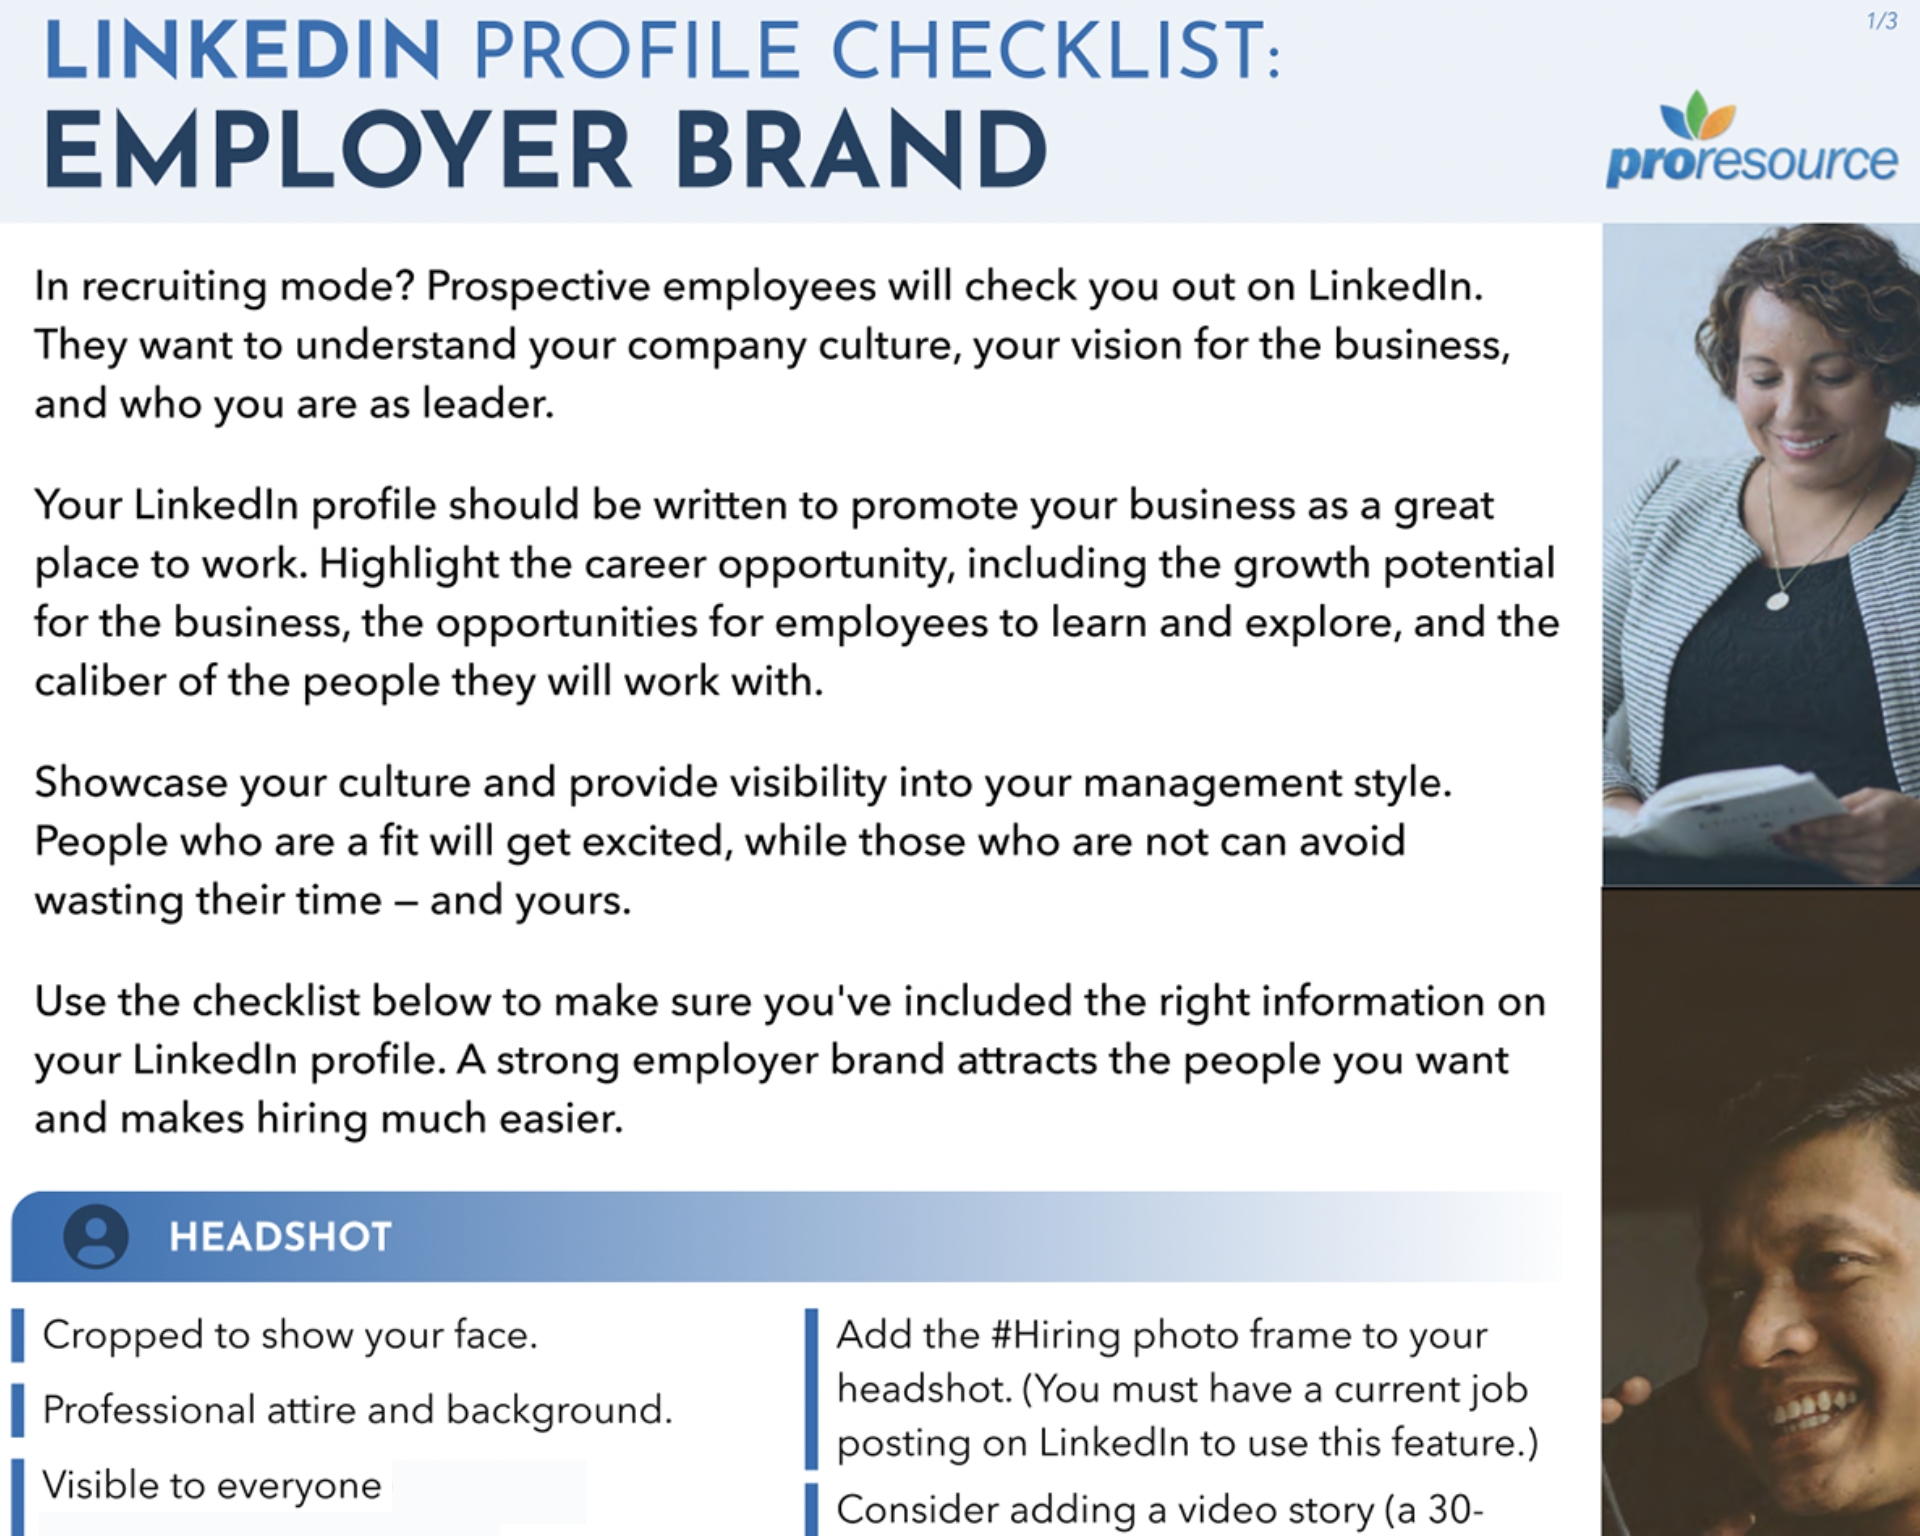 Linkedin profile checklist for employer branding goal 